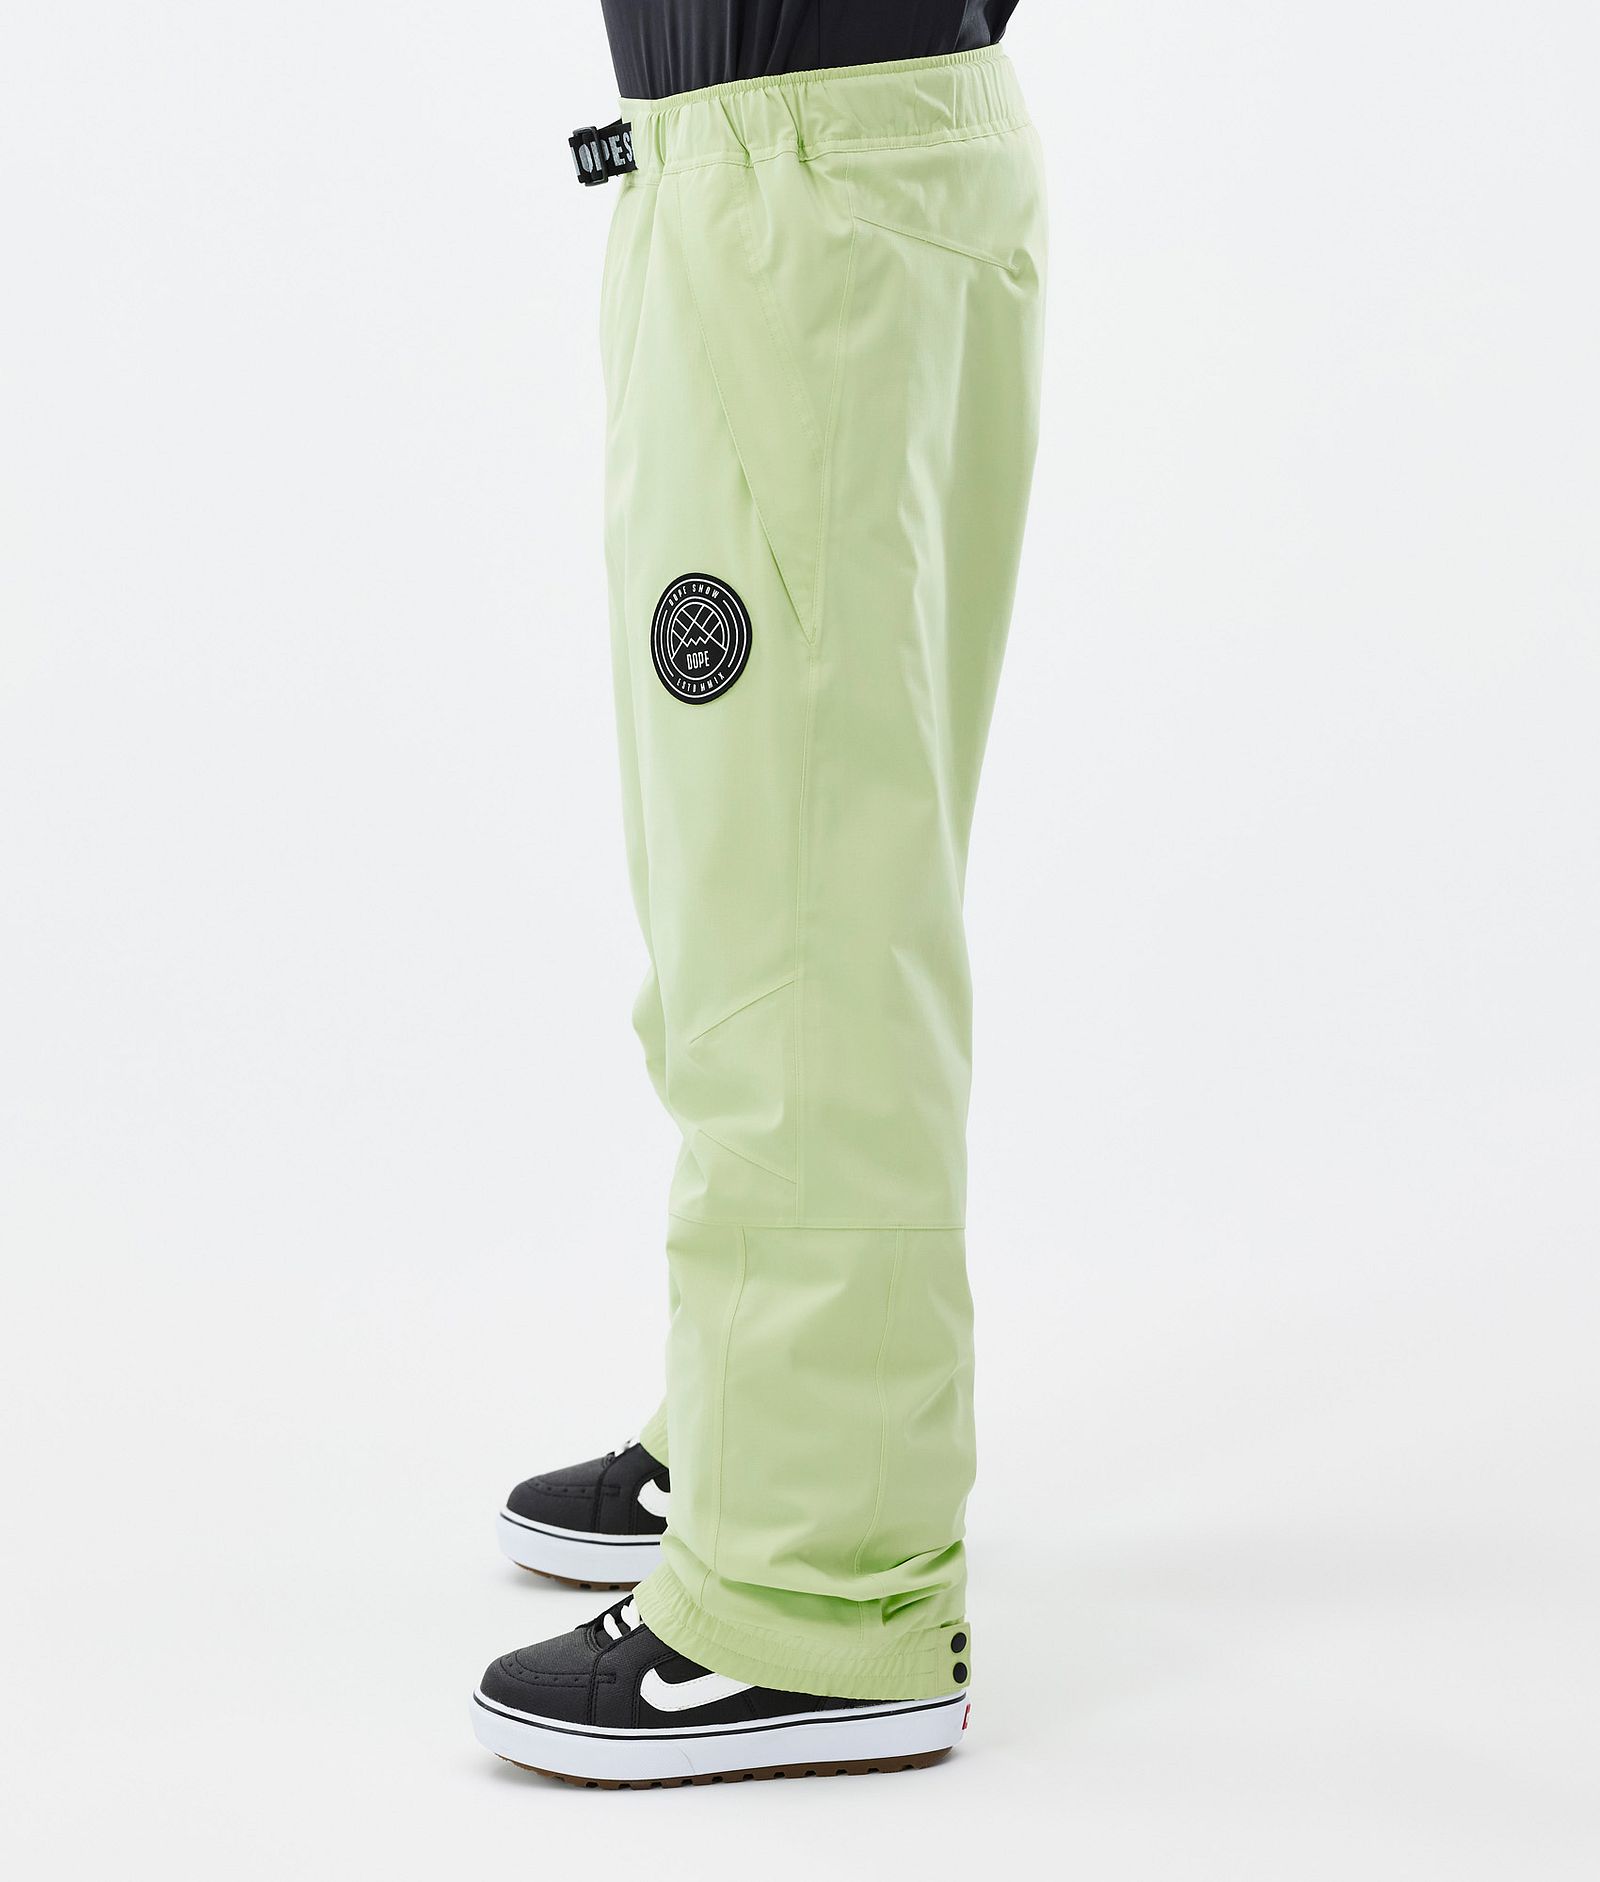 Dope Blizzard Pantalones Snowboard Hombre Faded Neon